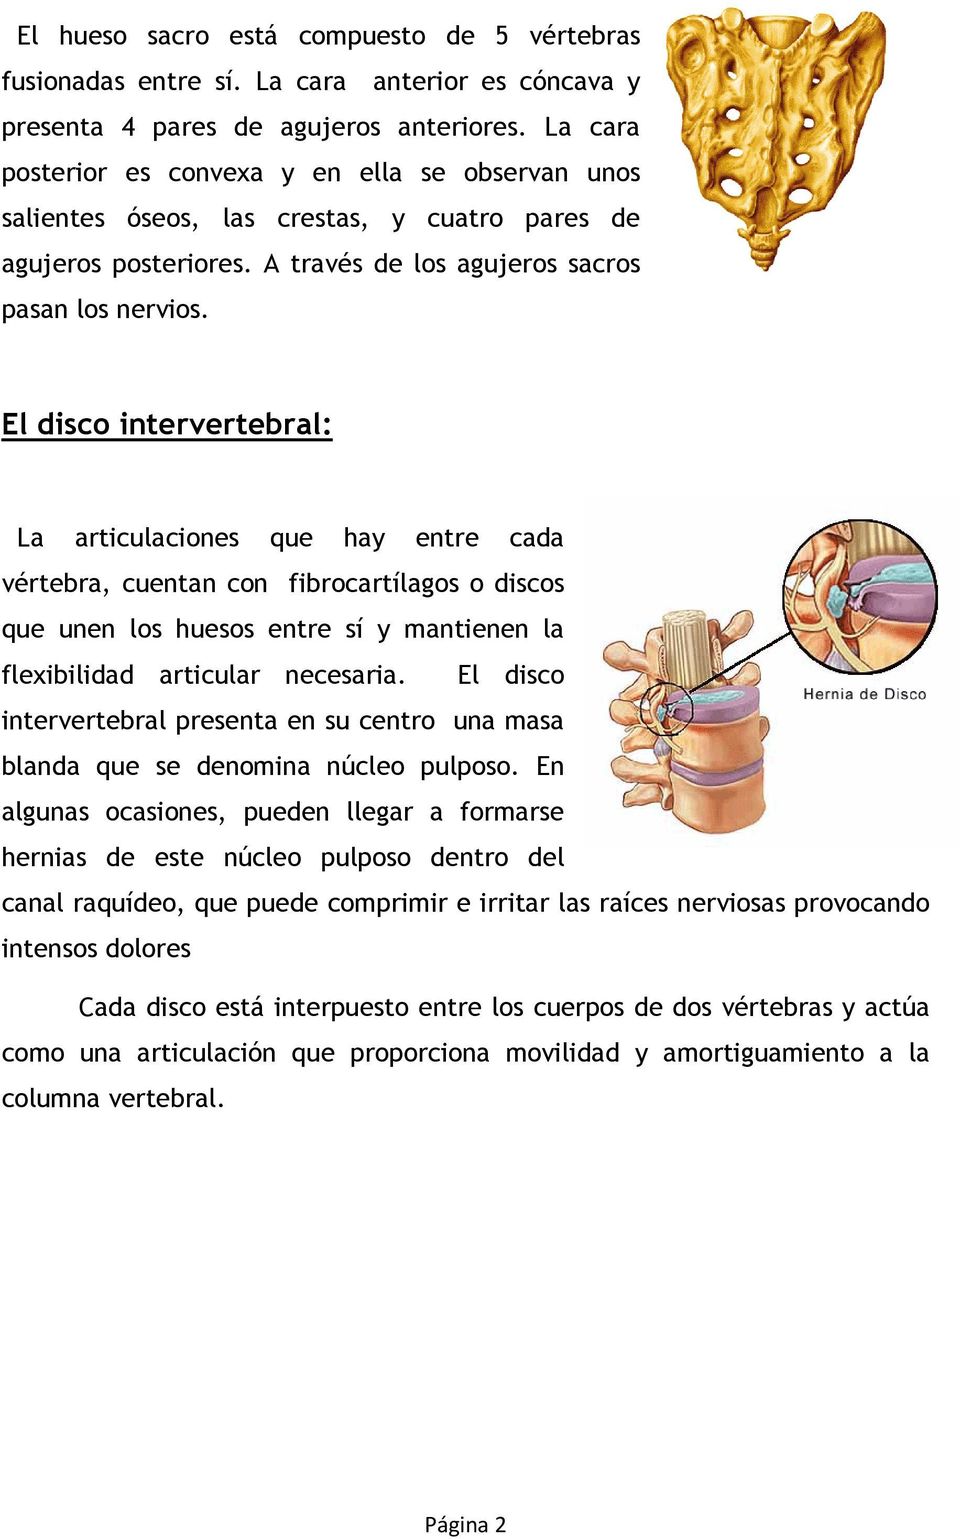 El disco intervertebral: La articulaciones que hay entre cada vértebra, cuentan con fibrocartílagos o discos que unen los huesos entre sí y mantienen la flexibilidad articular necesaria.